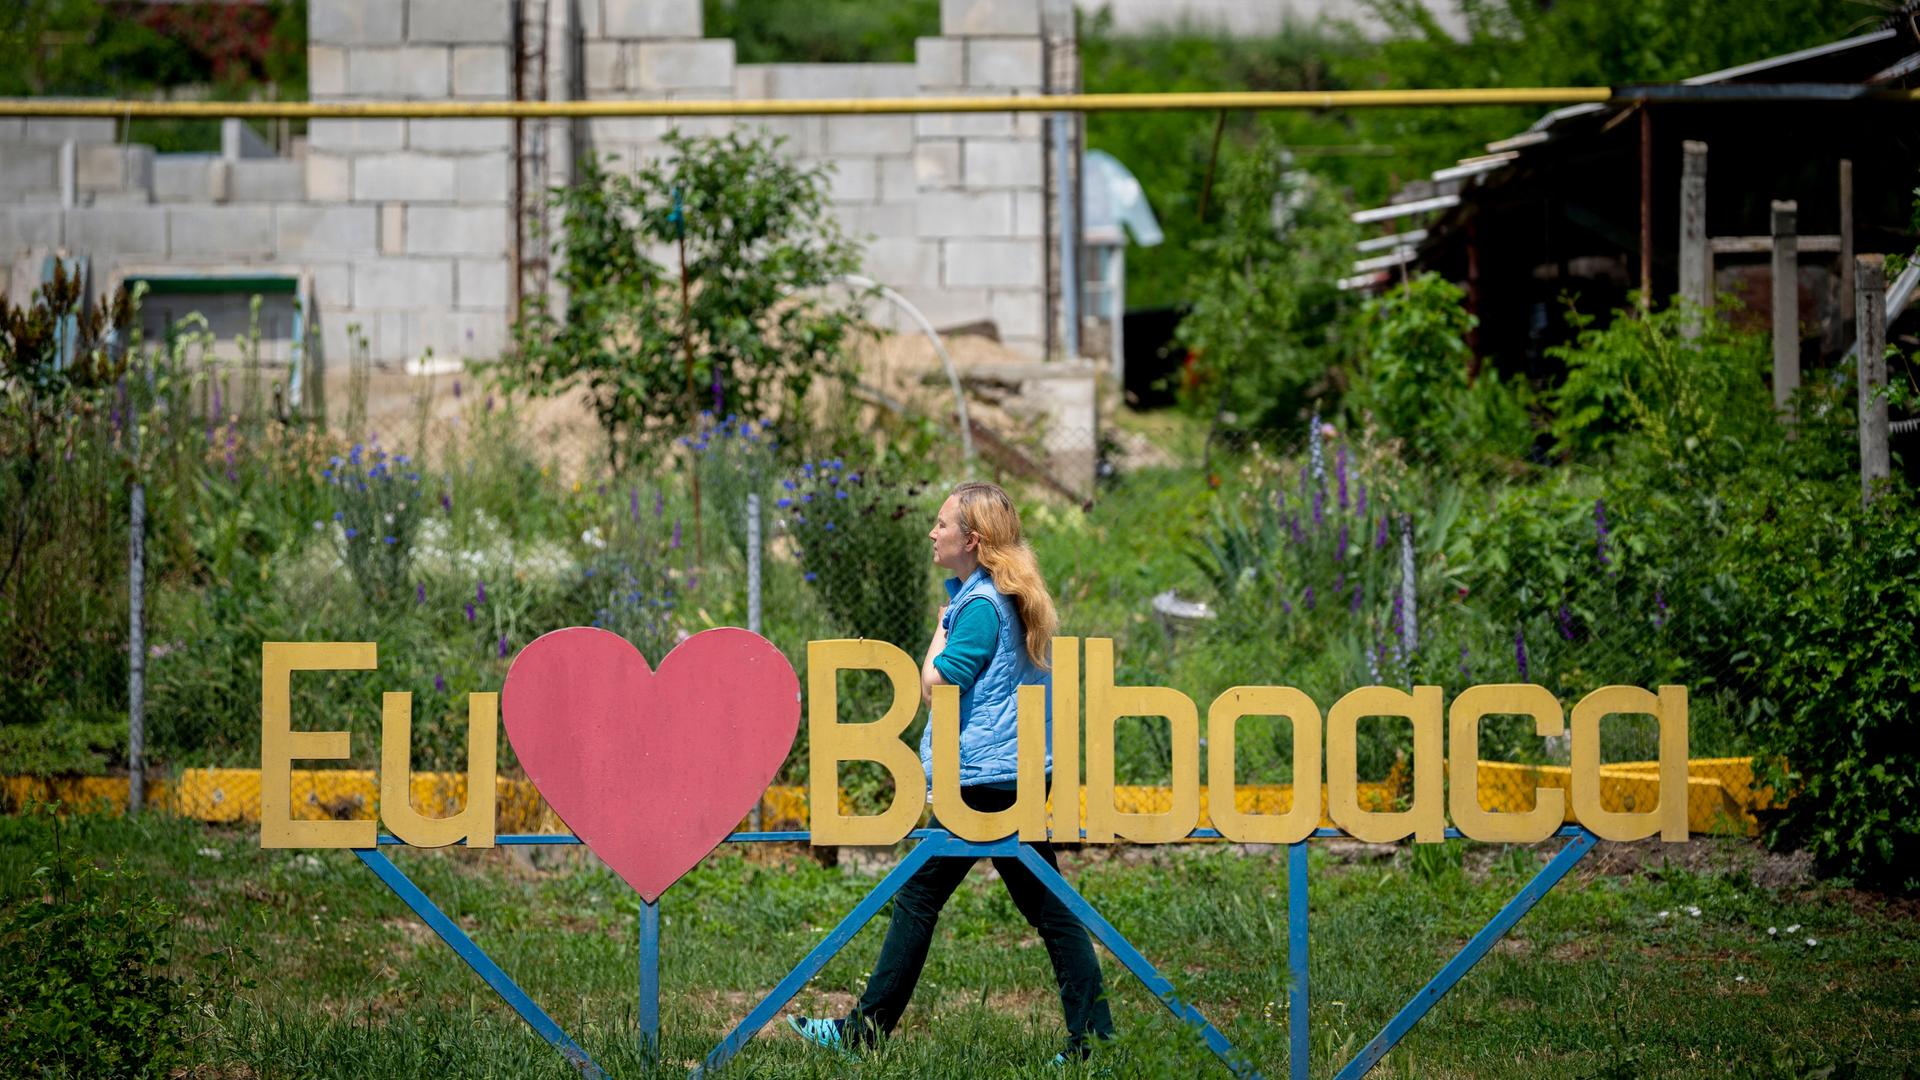 Bulboaca: Eine Frau geht an einem Schild mit der Aufschrift "Ich liebe Bulboaca" vor dem Castel Mimi vorbei.